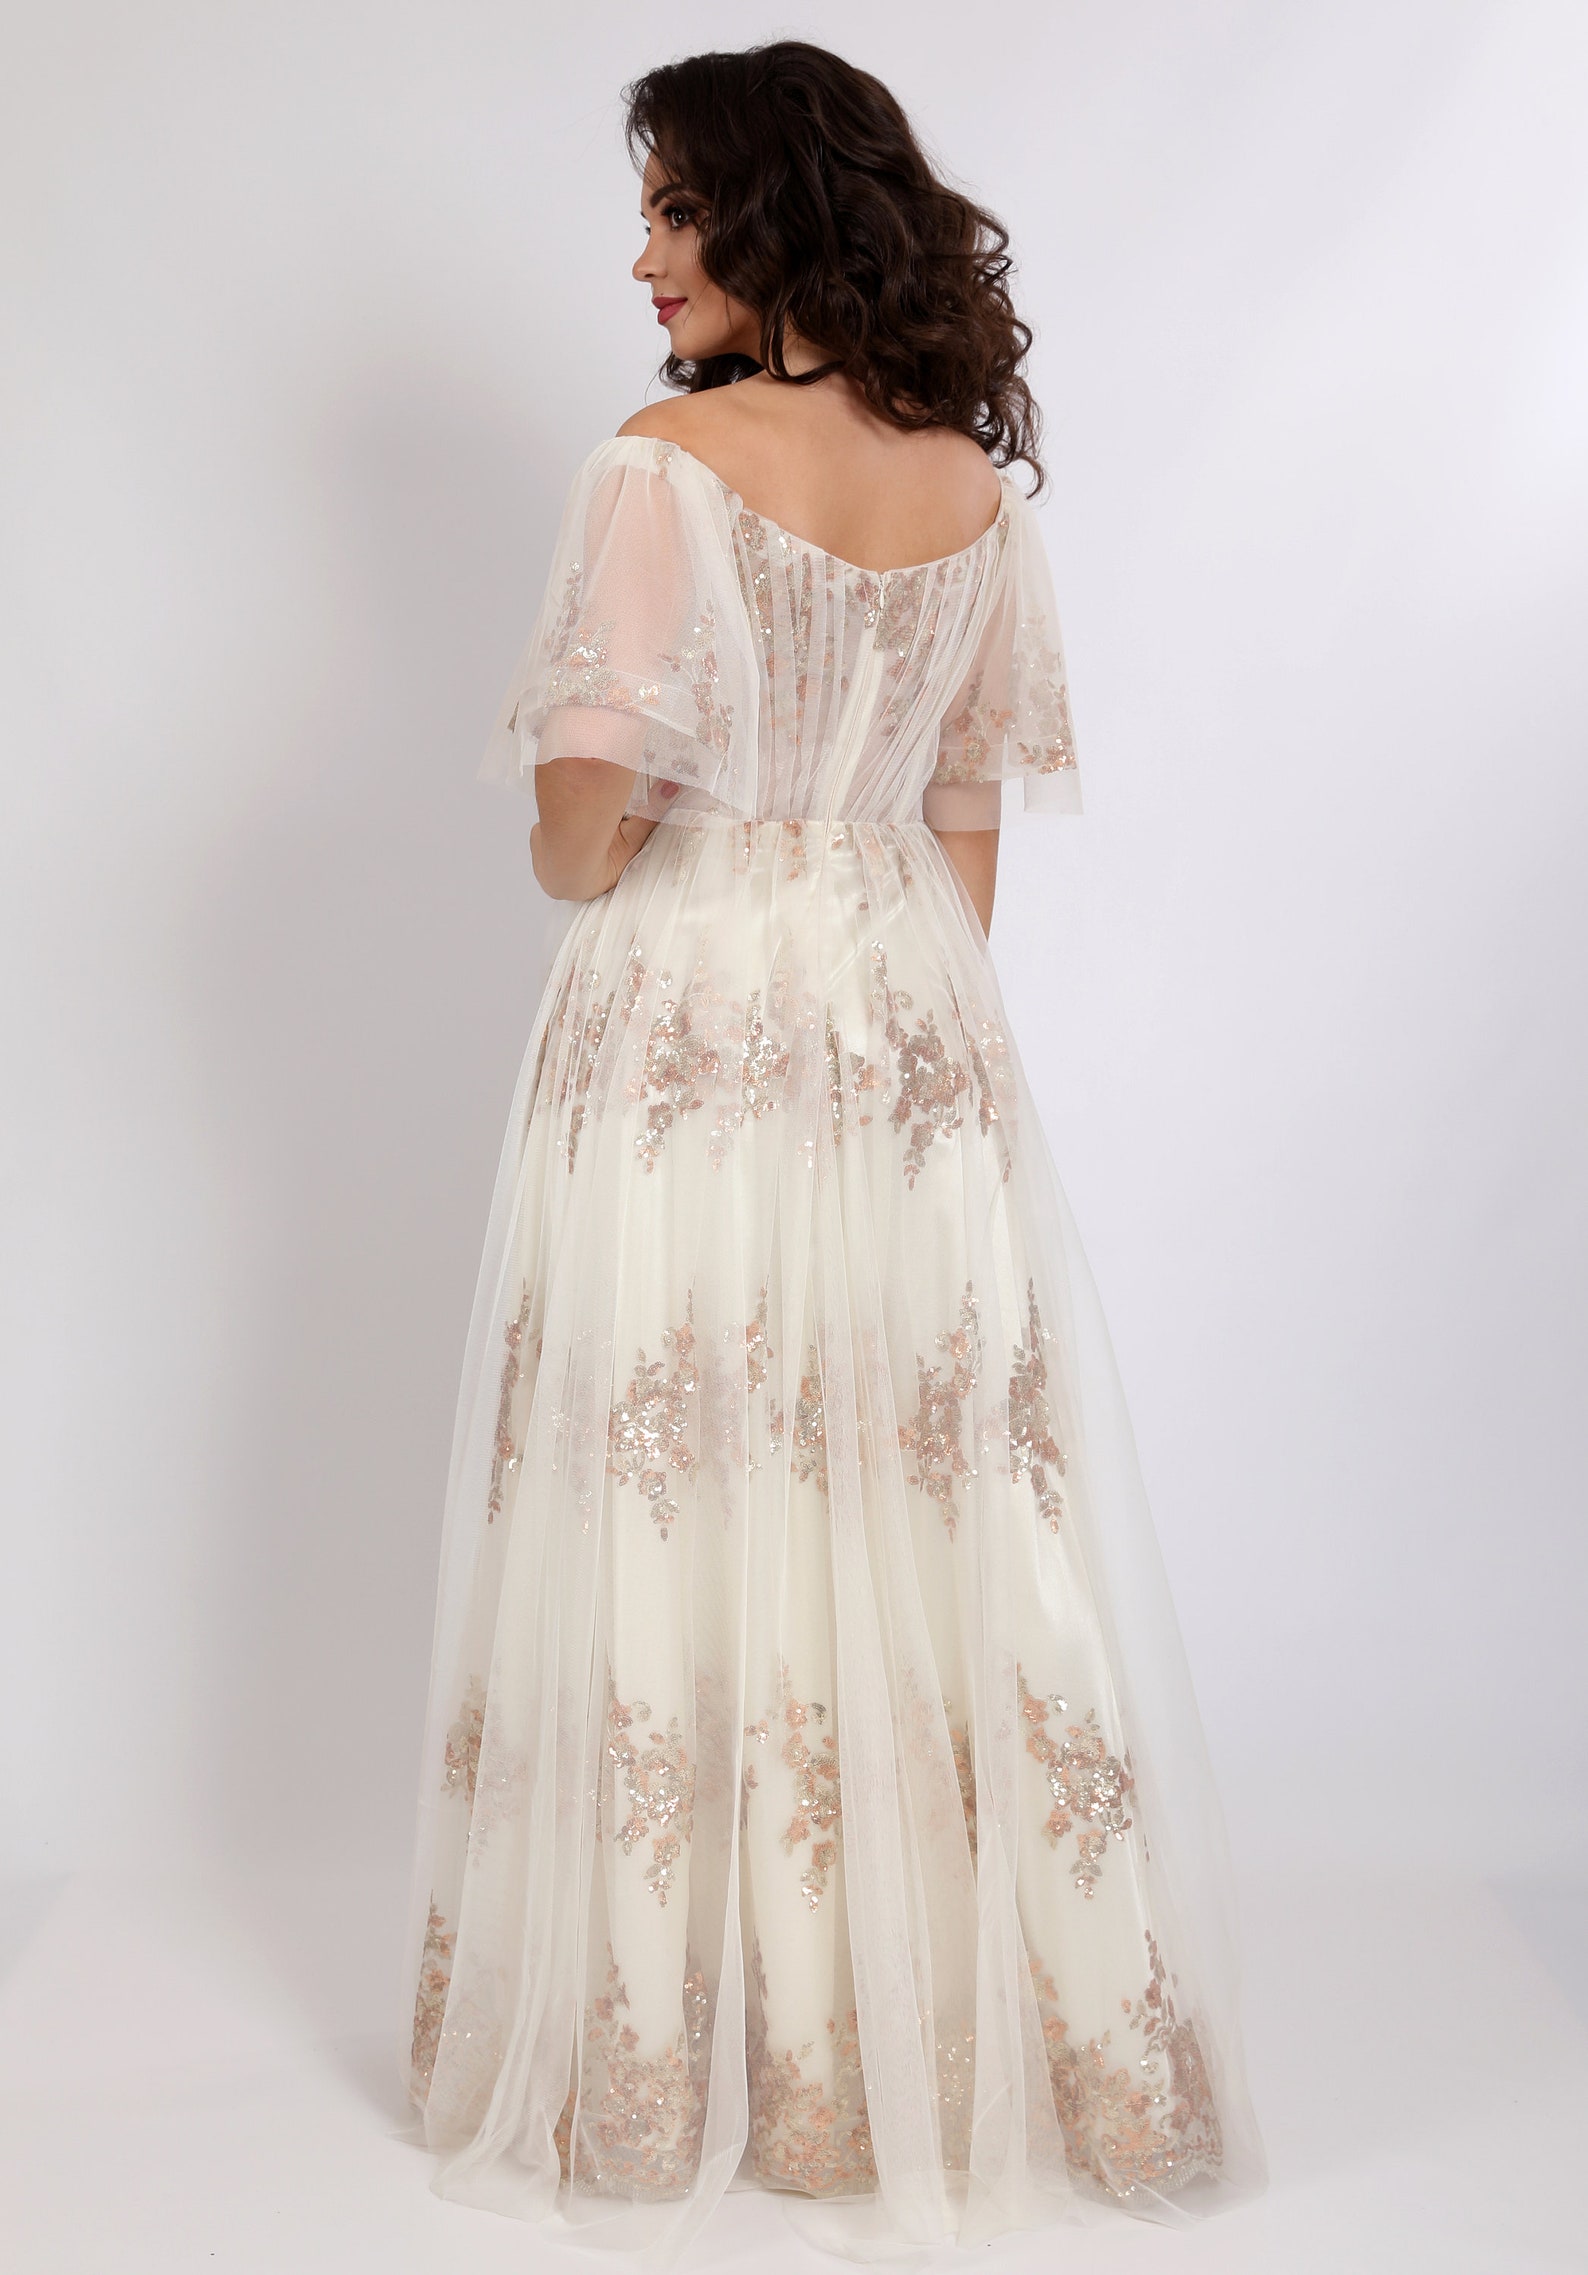 Bridal White Lace Tulle Cottagecore Dress | Etsy